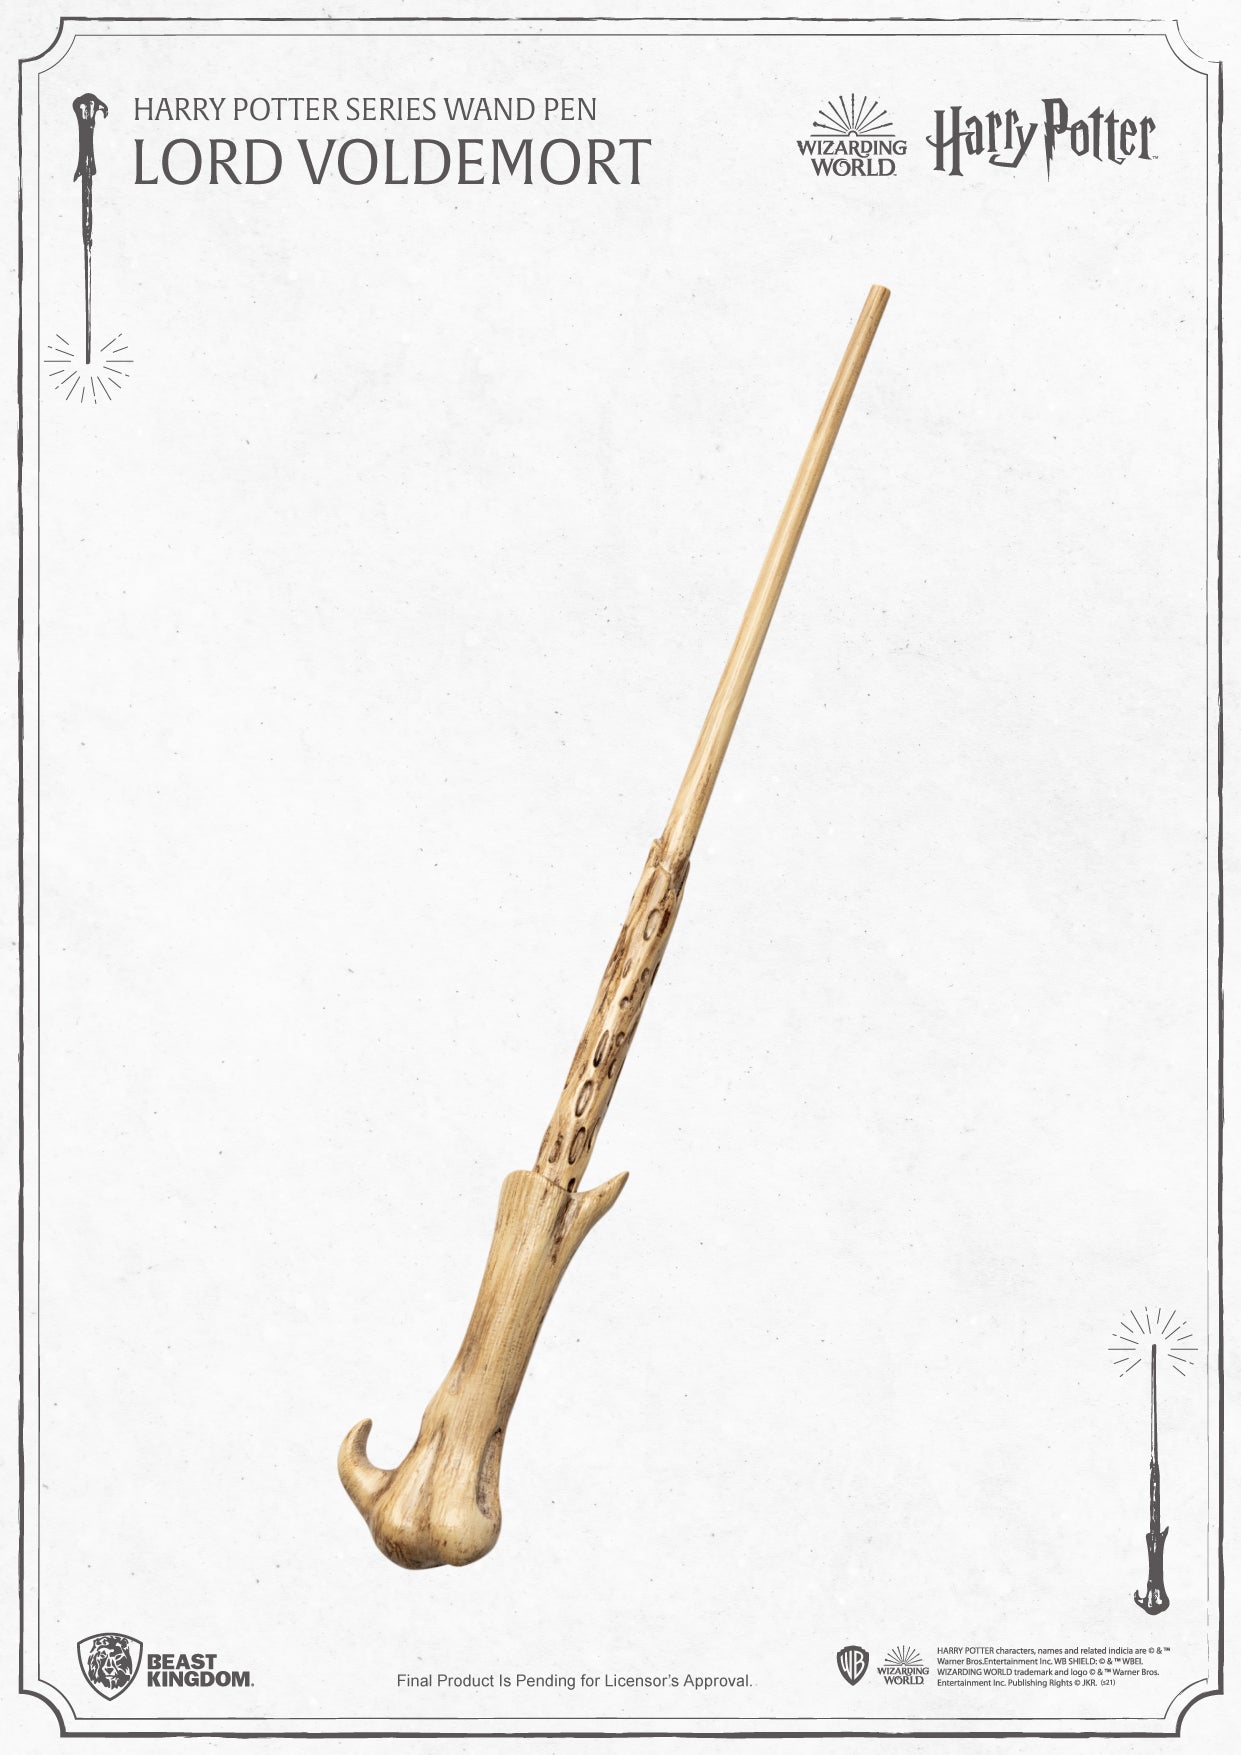 哈利波特系列魔杖笔伏地魔 PEN-001-1